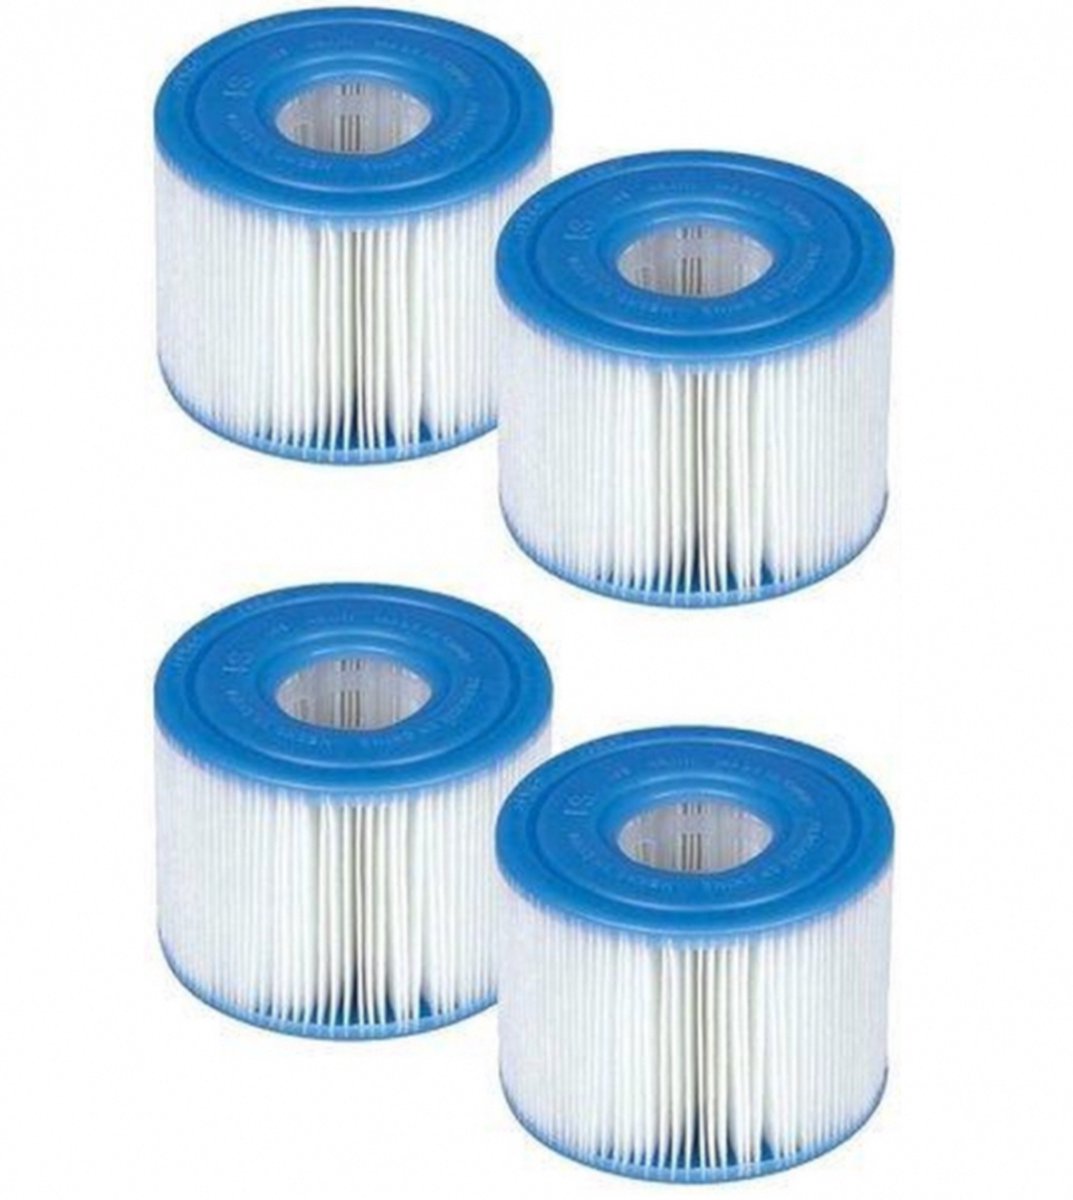 Zwembad filters - type 1 pomp - tot 1249 liter per uur - 4 stuks